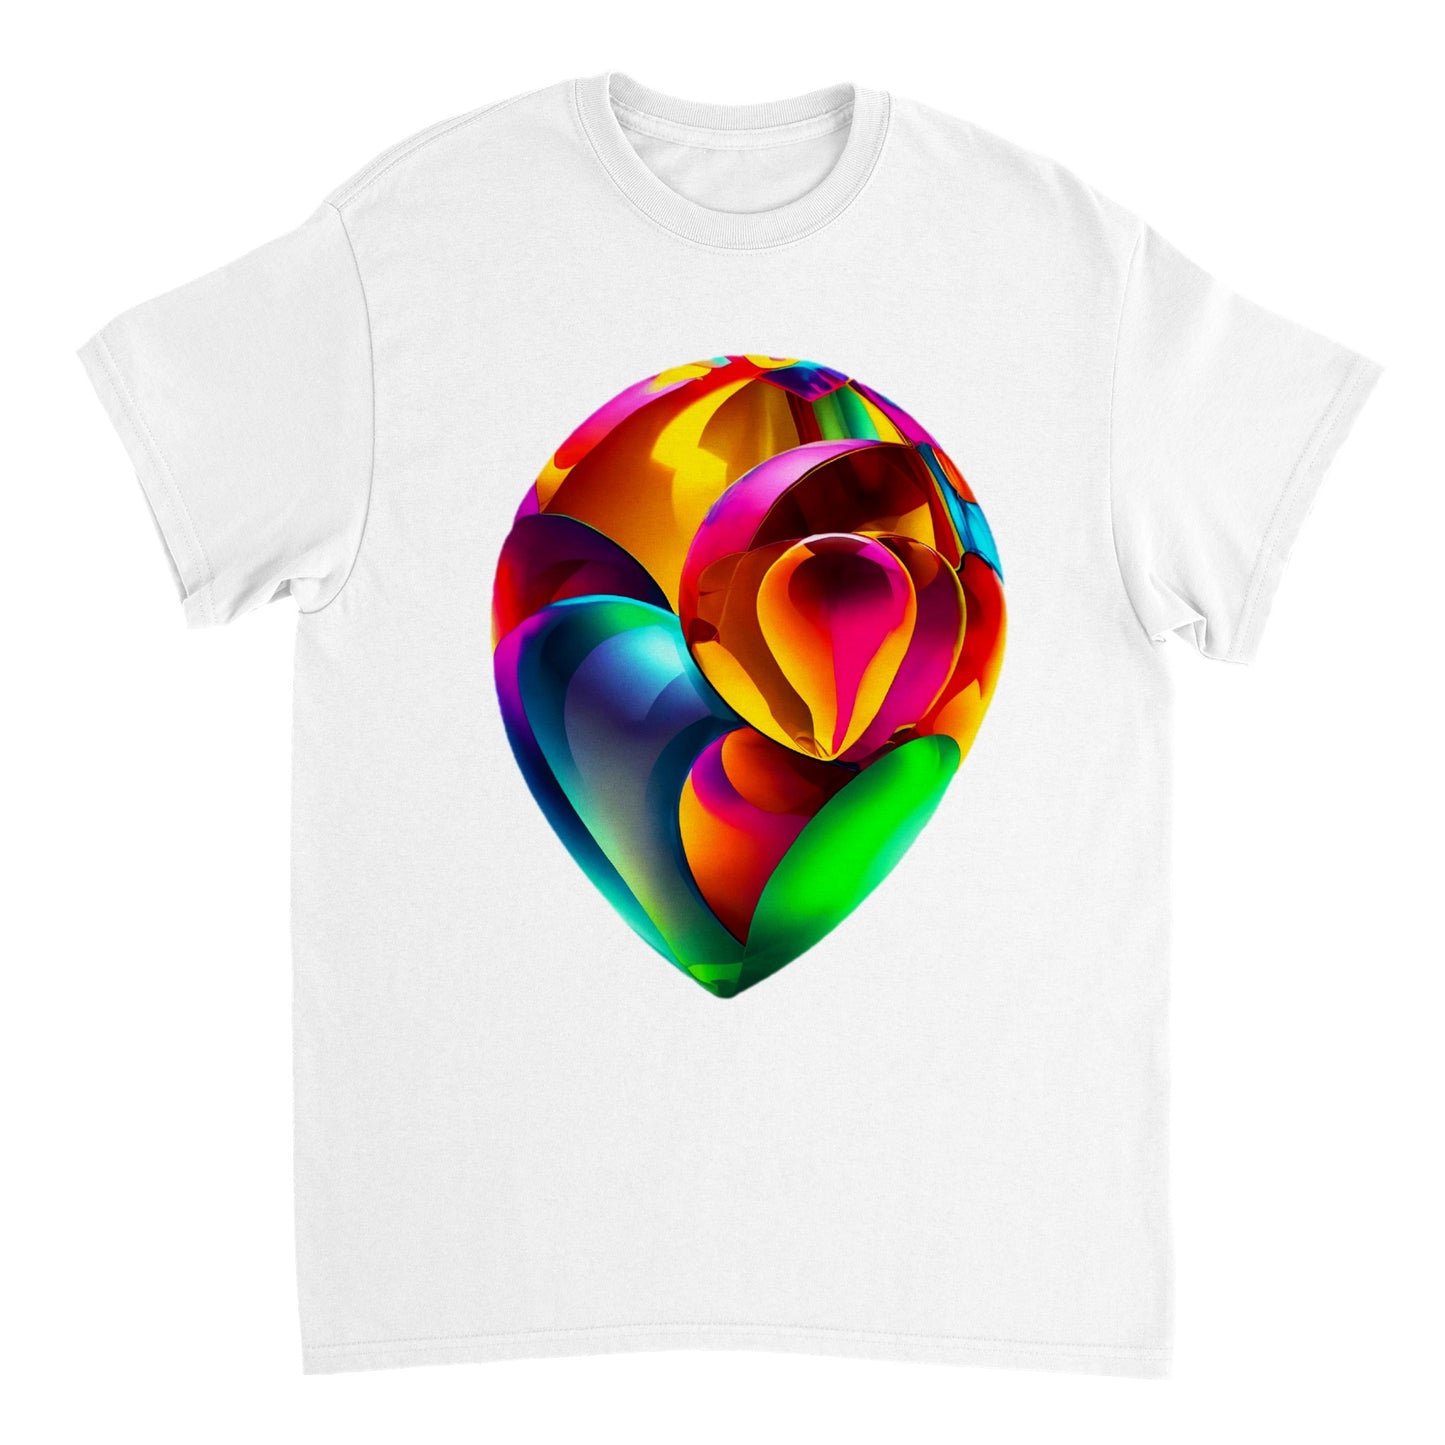 Love Heart - Heavyweight Unisex Crewneck T-shirt 100